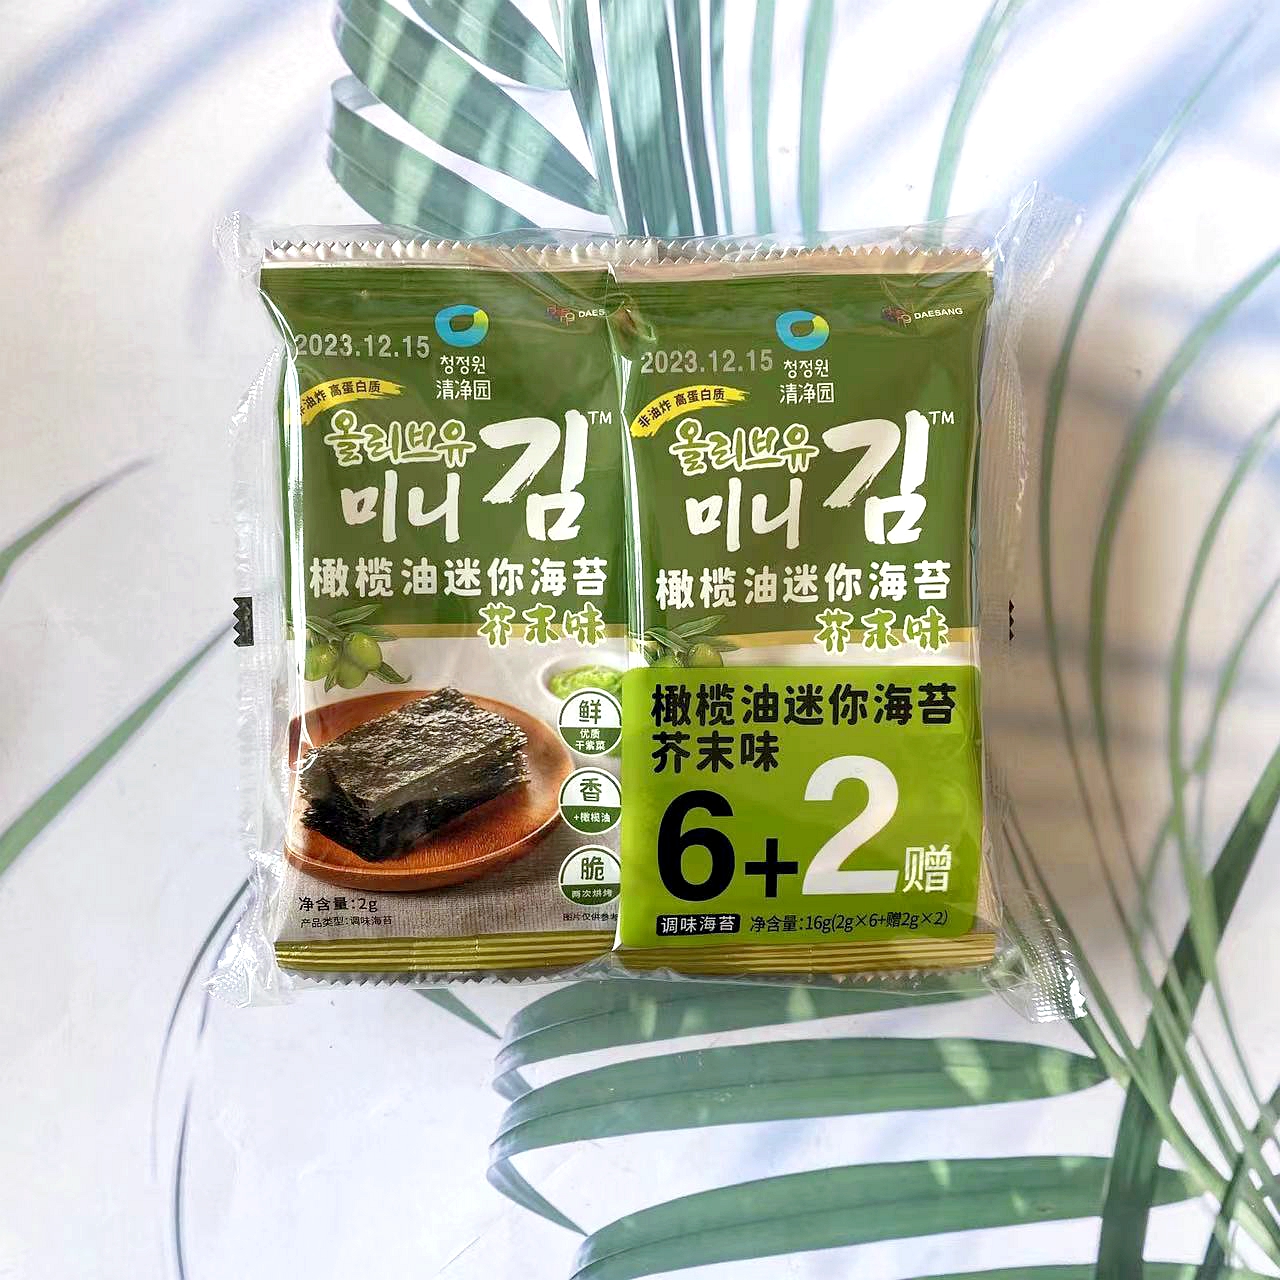 清净园橄榄油迷你海苔6+2原味芥末味海苔包饭寿司零食包邮